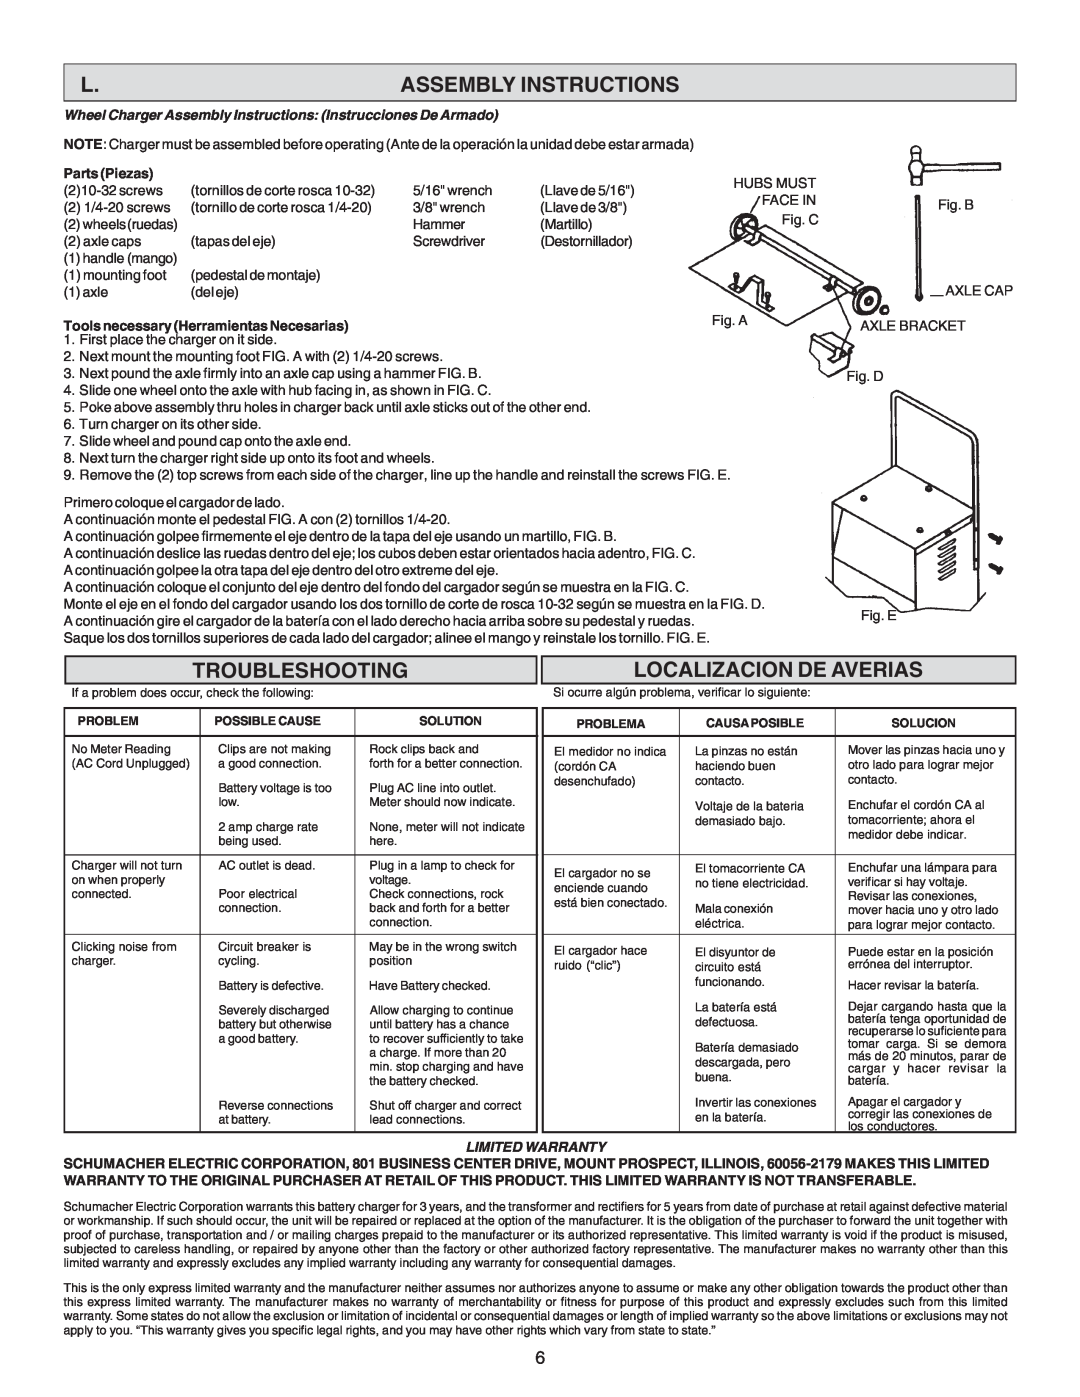 Schumacher SE-4220 Assembly Instructions, Troubleshooting, Localizacion De Averias, Parts Piezas, Limited Warranty 